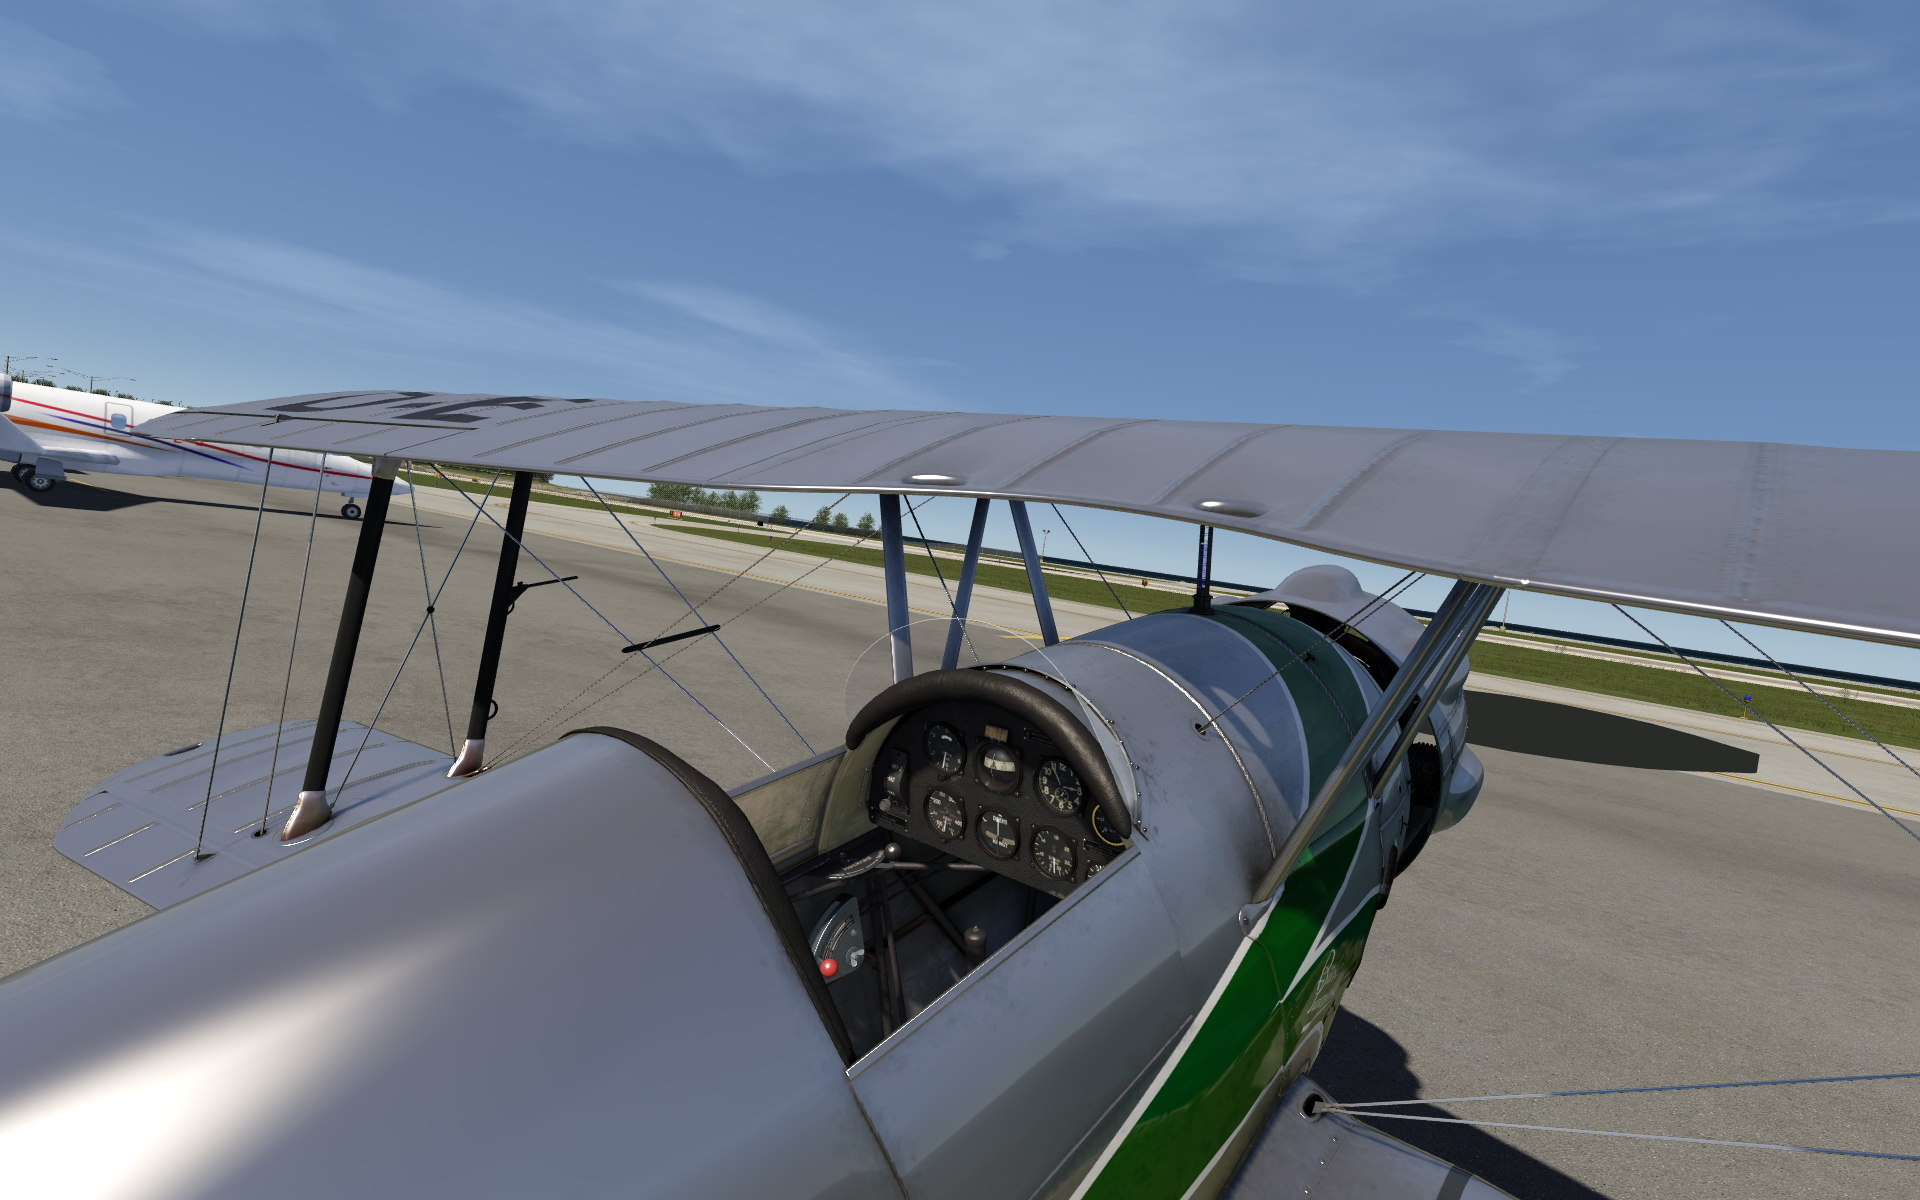 aerofly rc flight simulator